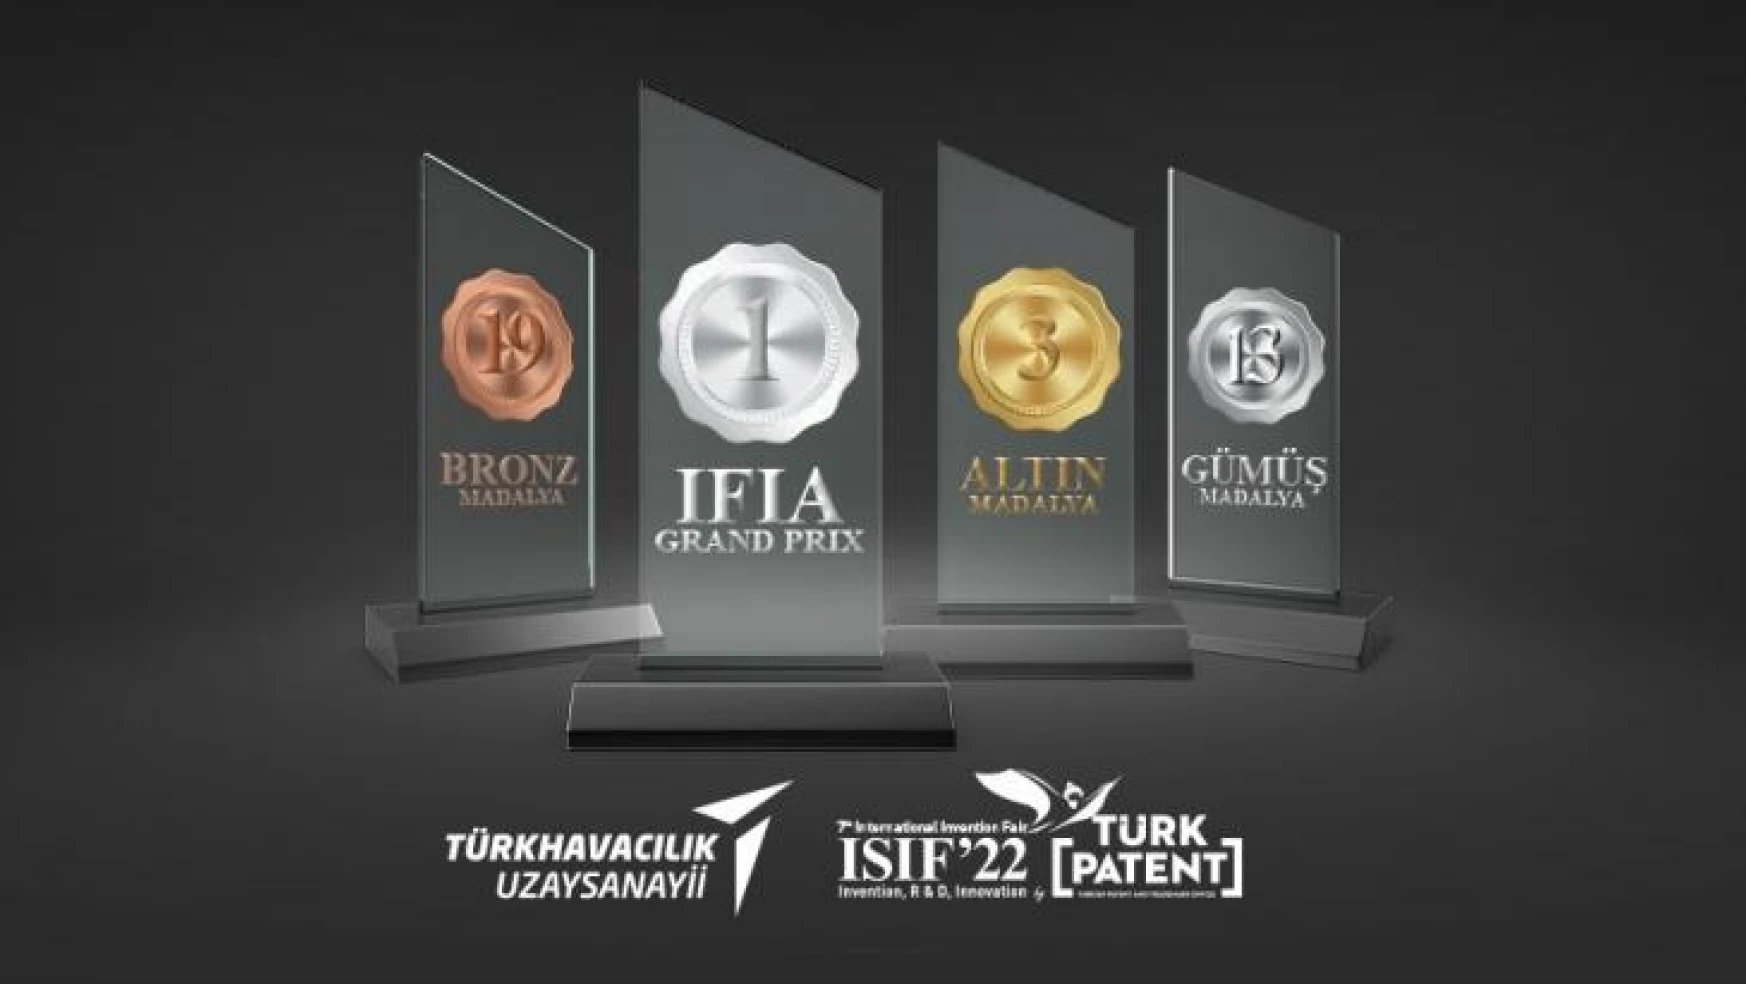 TUSAŞ, ISIF'te 36 ödülün sahibi oldu